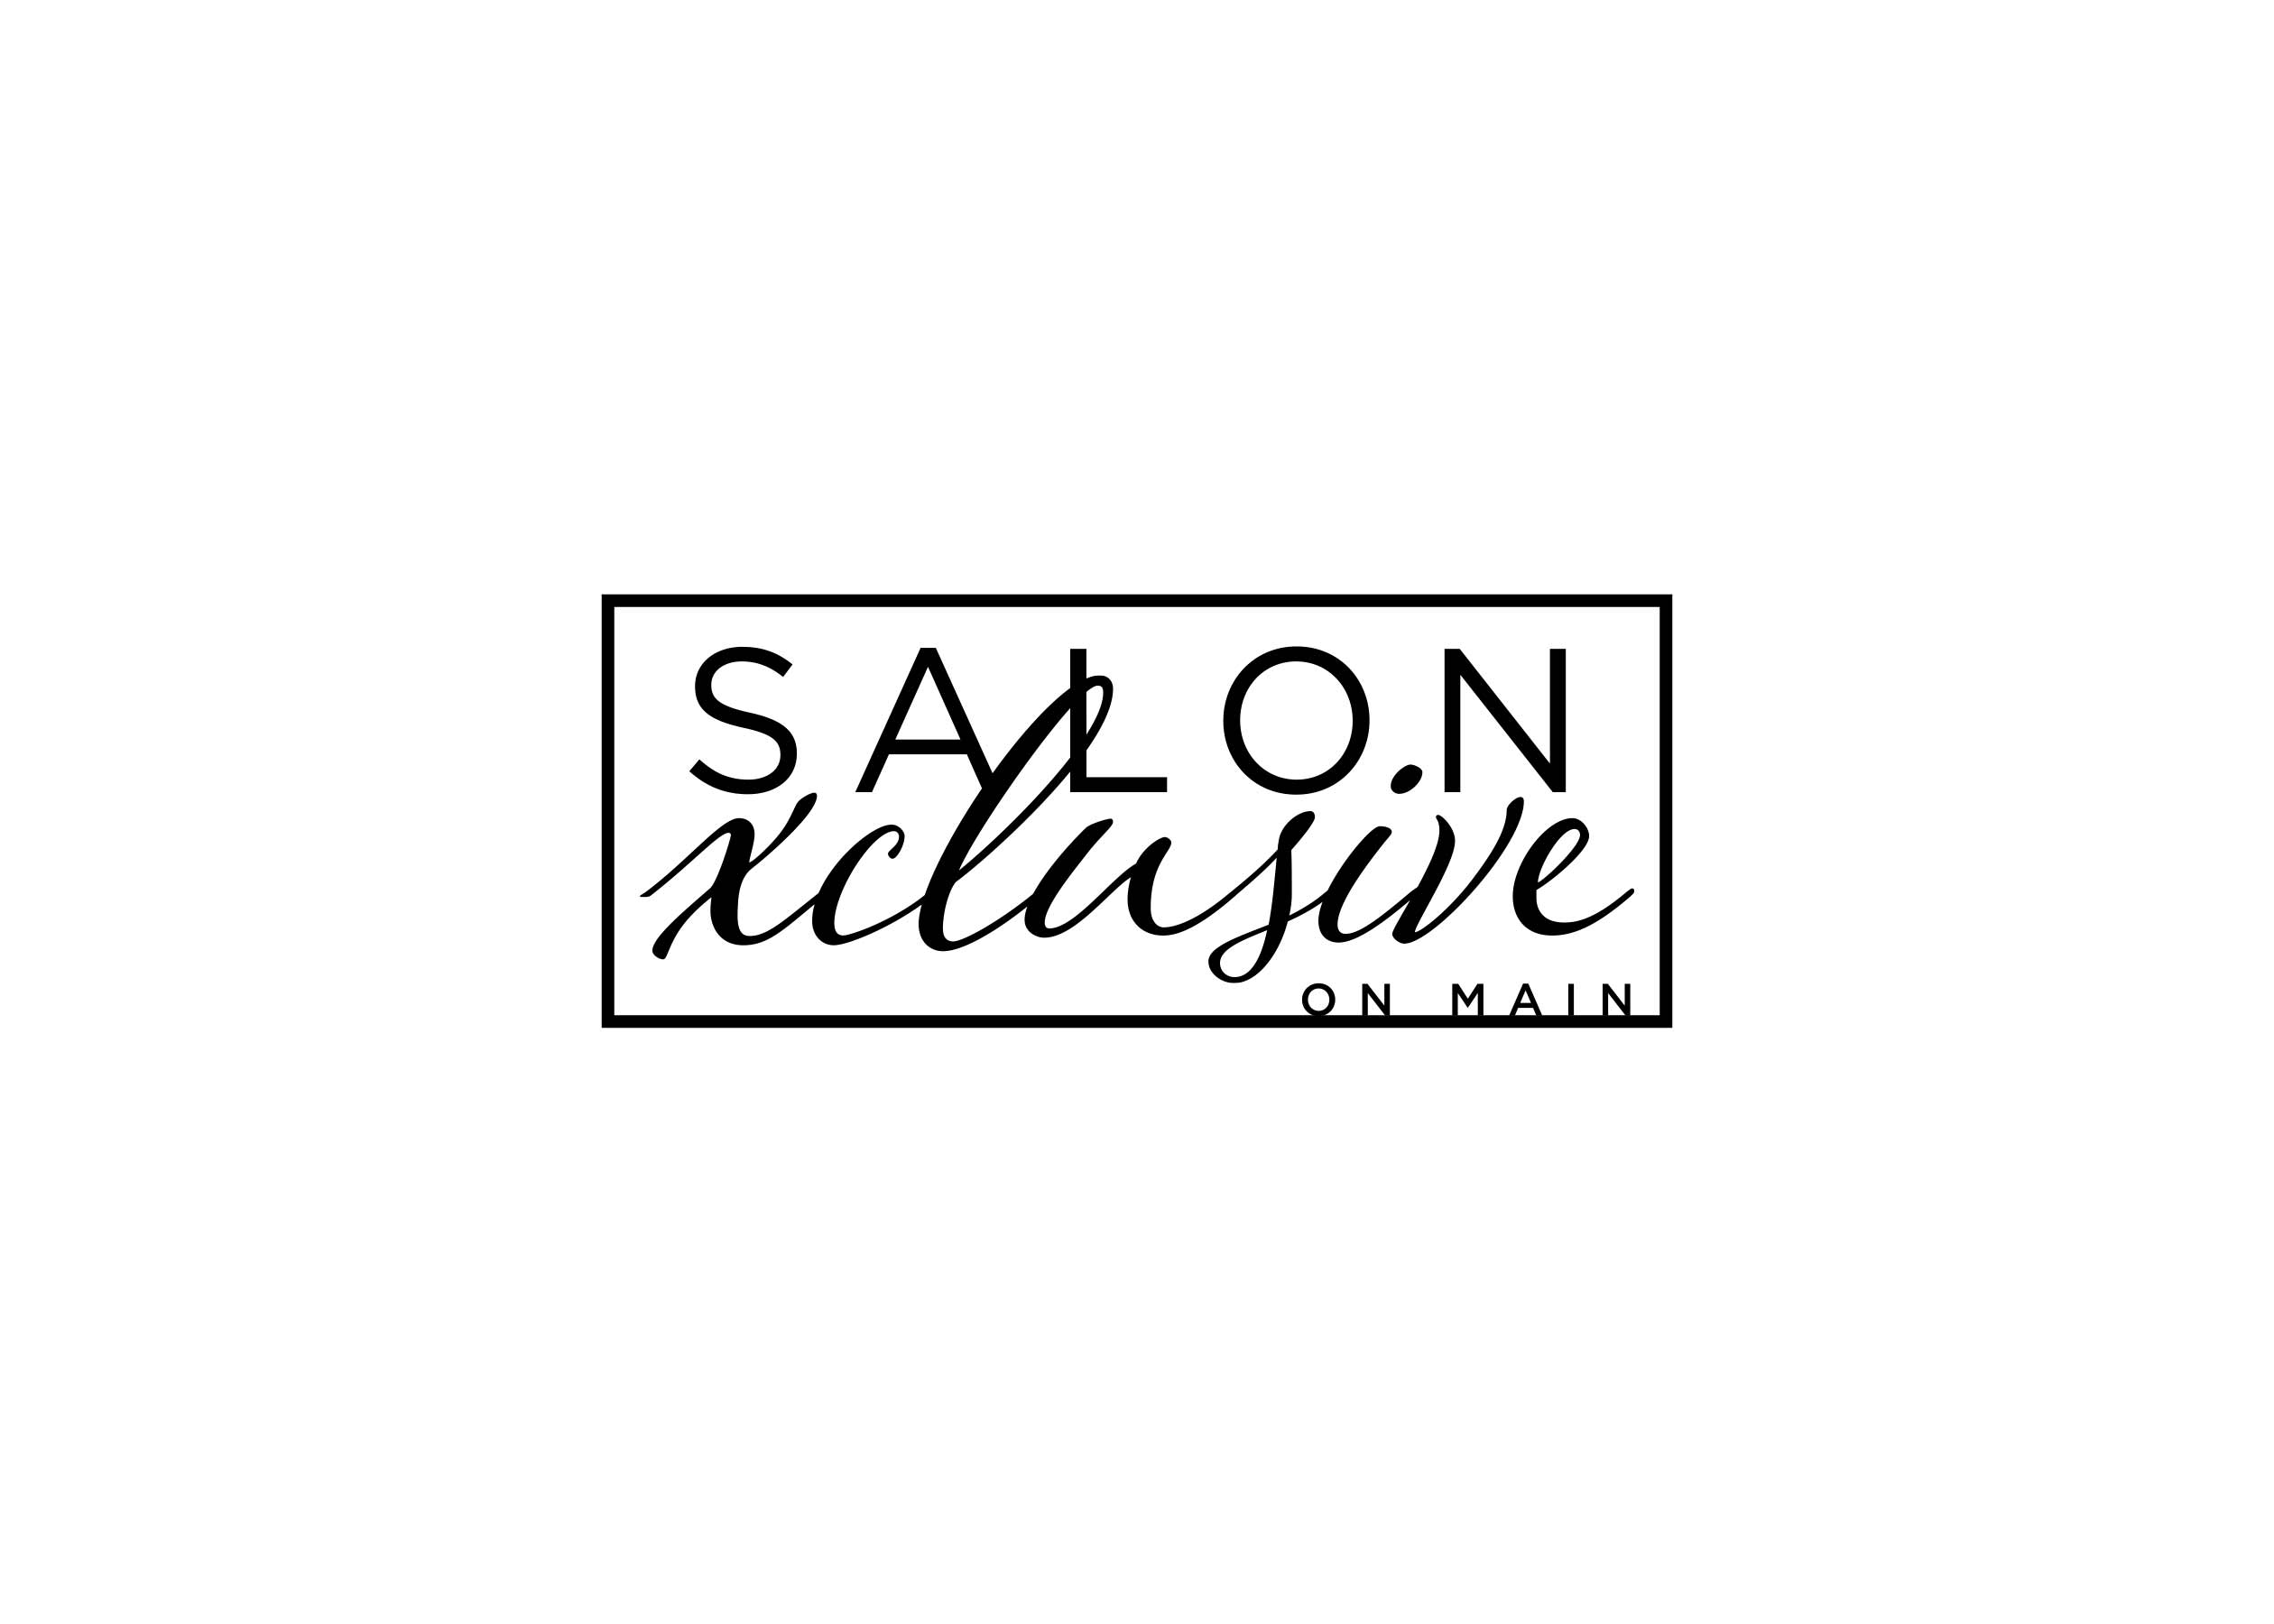 Logo Design for Salon Xclusive